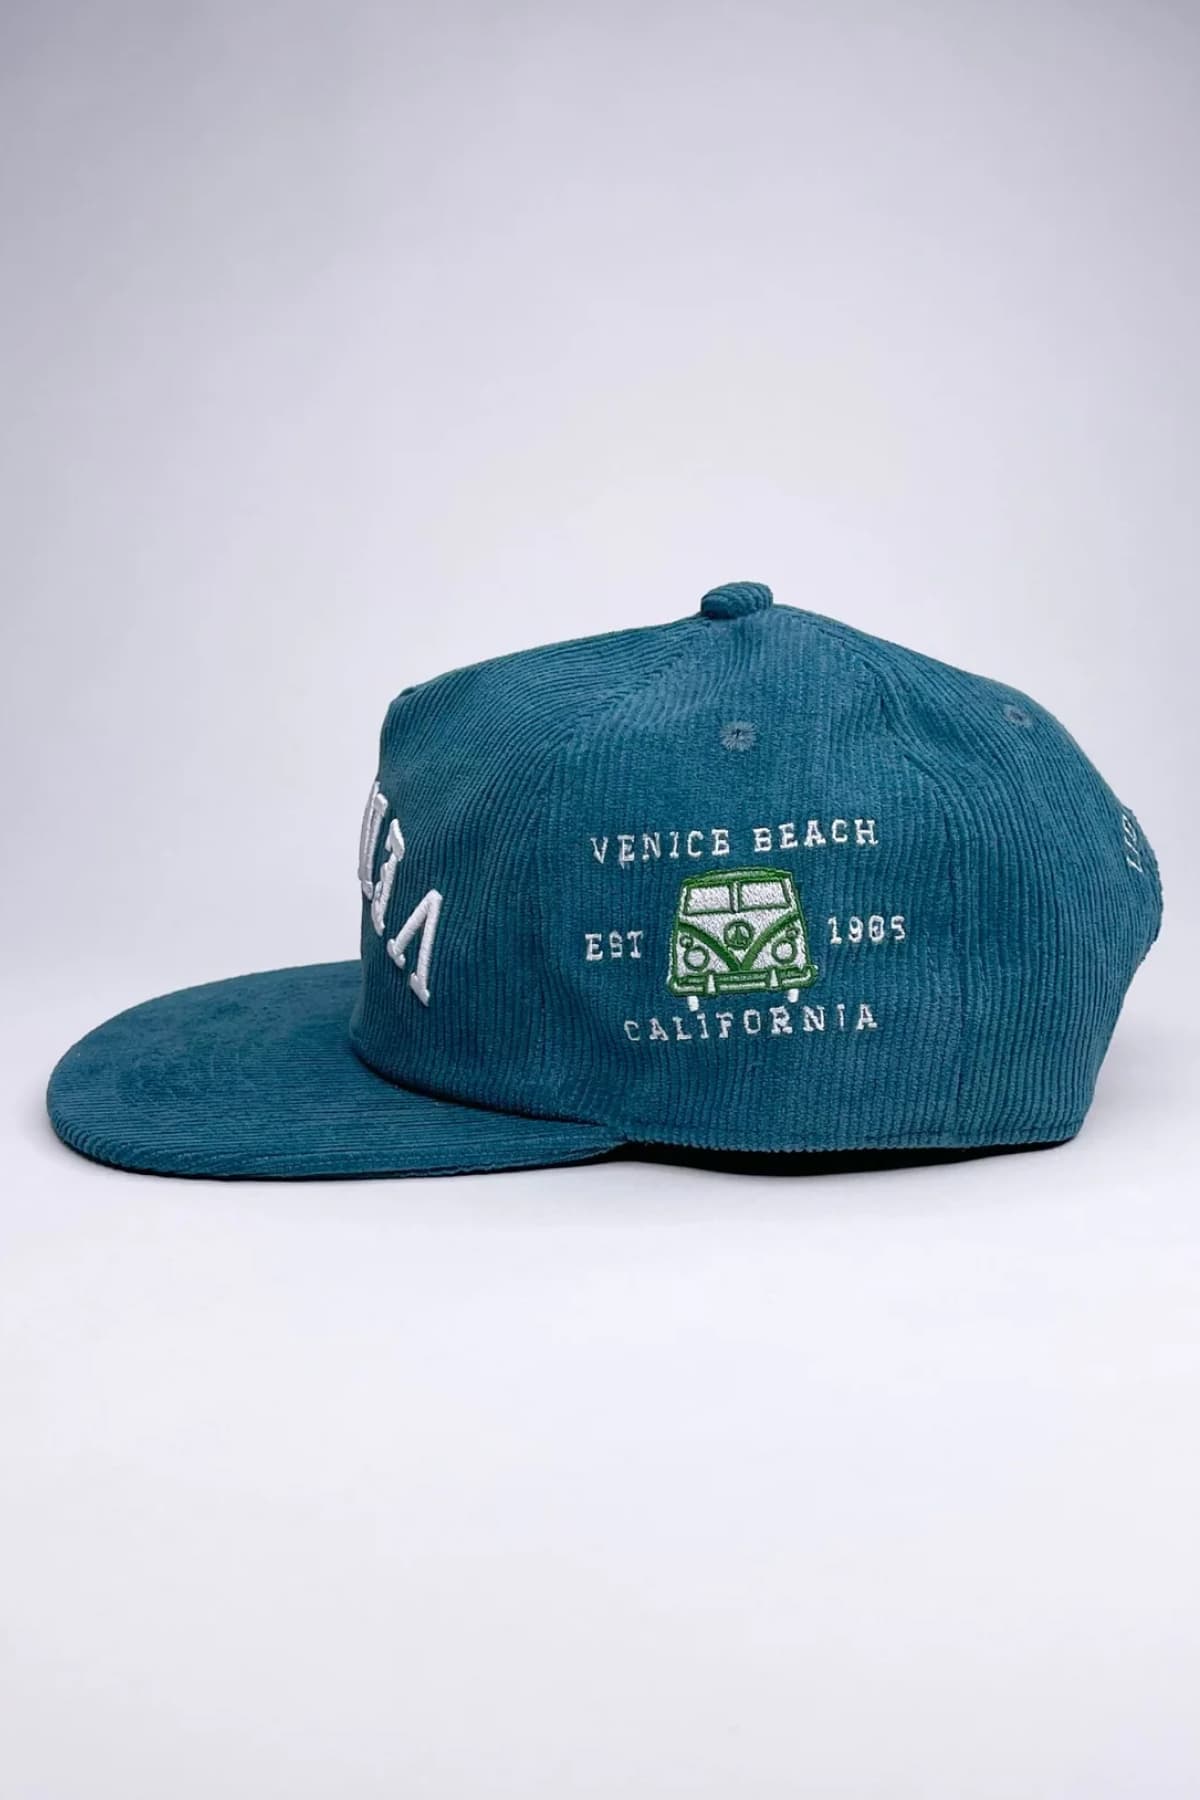 Venice Corduroy Hat (Teal) - Hat